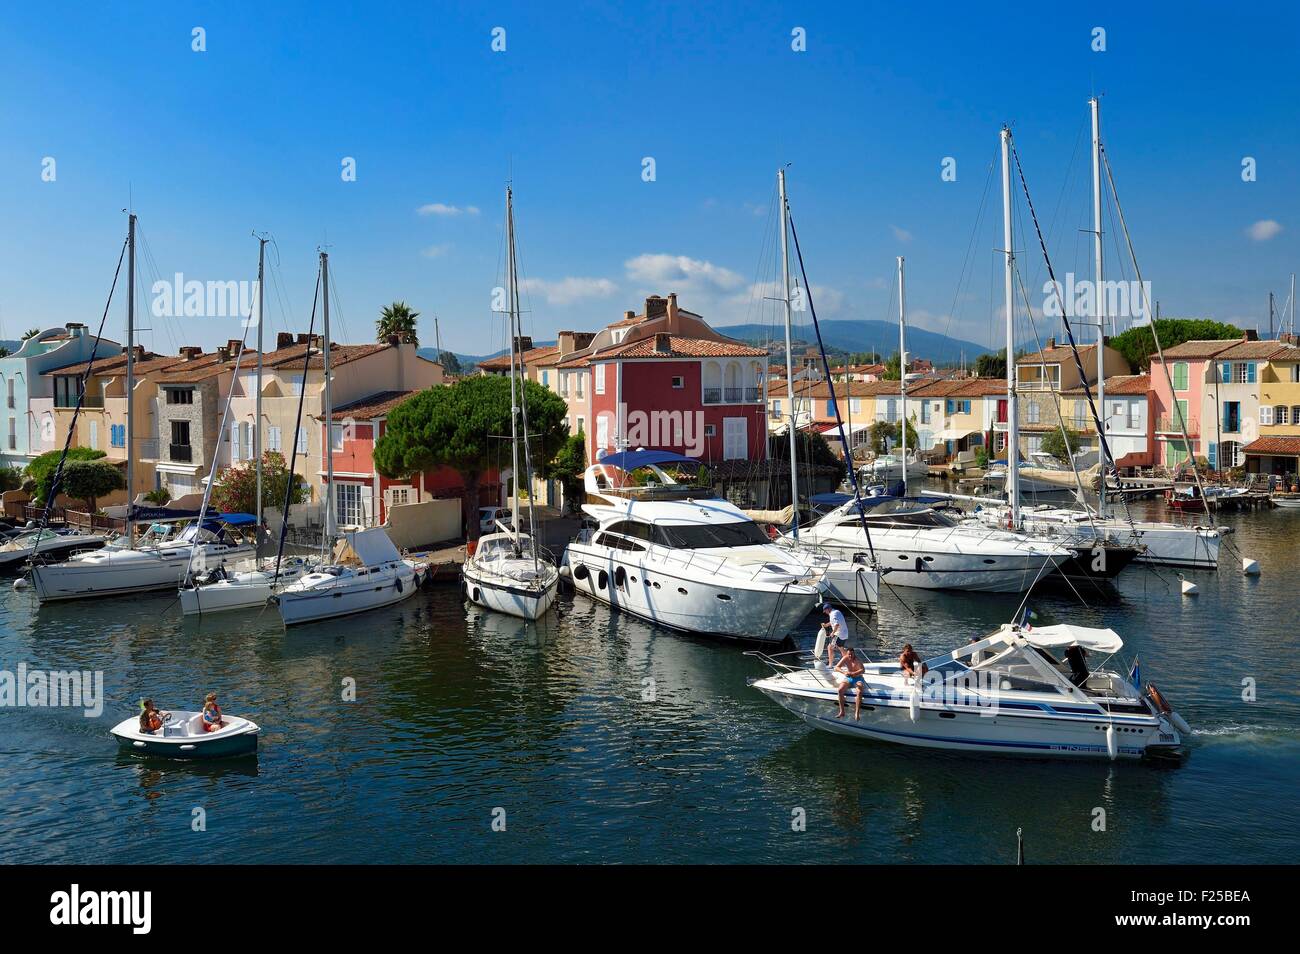 La France, Var, Golfe de St Tropez, la ville balnéaire de Port Grimaud, maisons avec ponton privé Banque D'Images